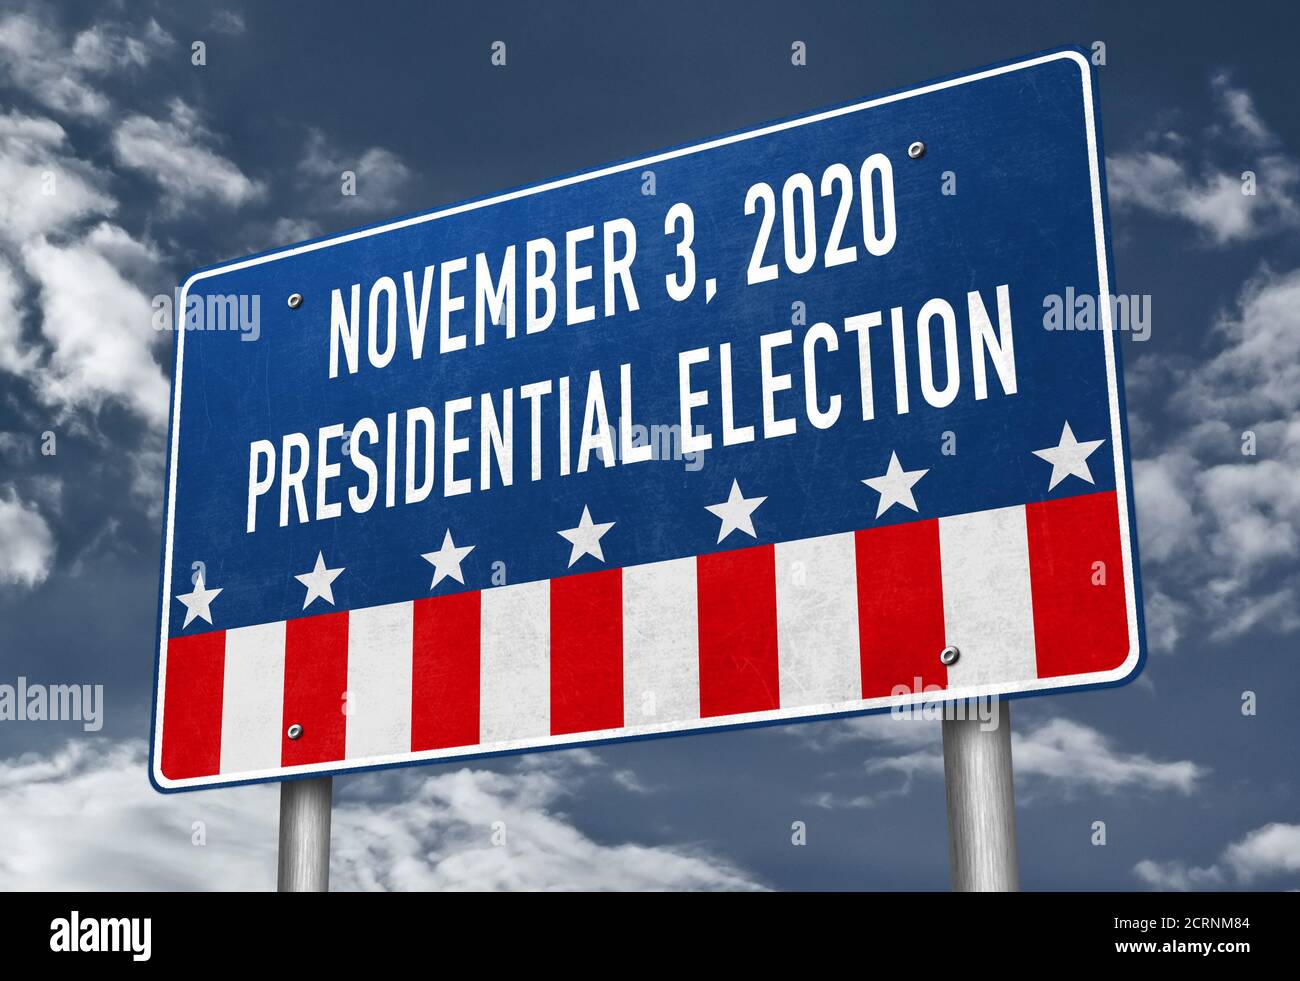 Presidential Election in America November 3, 2020 Stock Photo